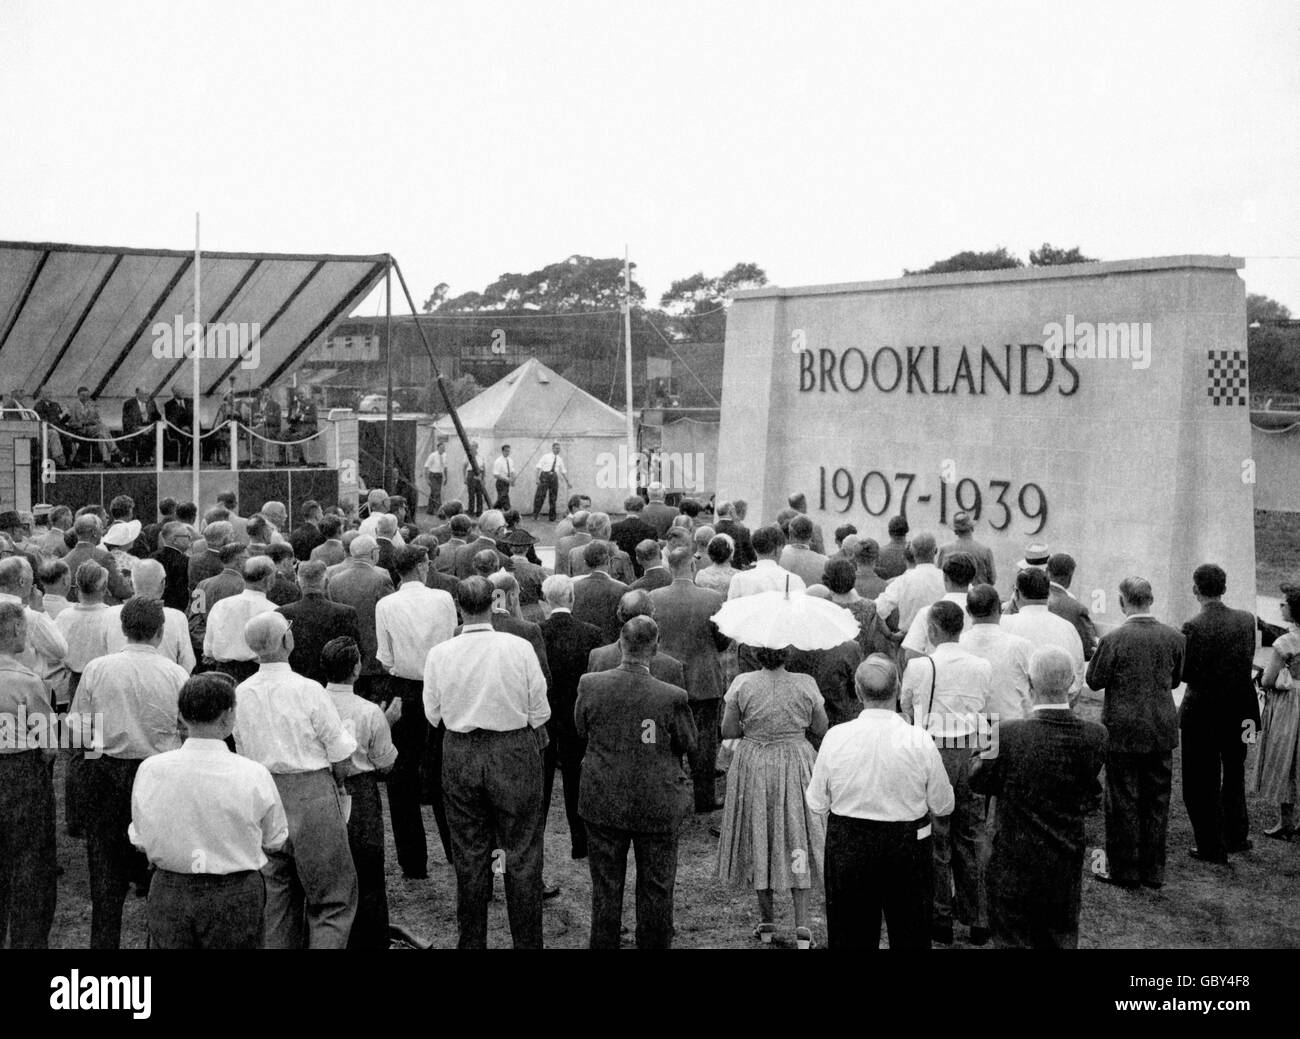 Un mémorial de 31 pieds de long à Brooklands comme centre de course automobile après son dévoilement à Brooklands par Lord Brabazon à l'occasion de l'anniversaire du Jubilé d'or de la première réunion sur la piste le 6 juillet 1907. Lord Brabazon était l'un des concurrents de la première course. Banque D'Images